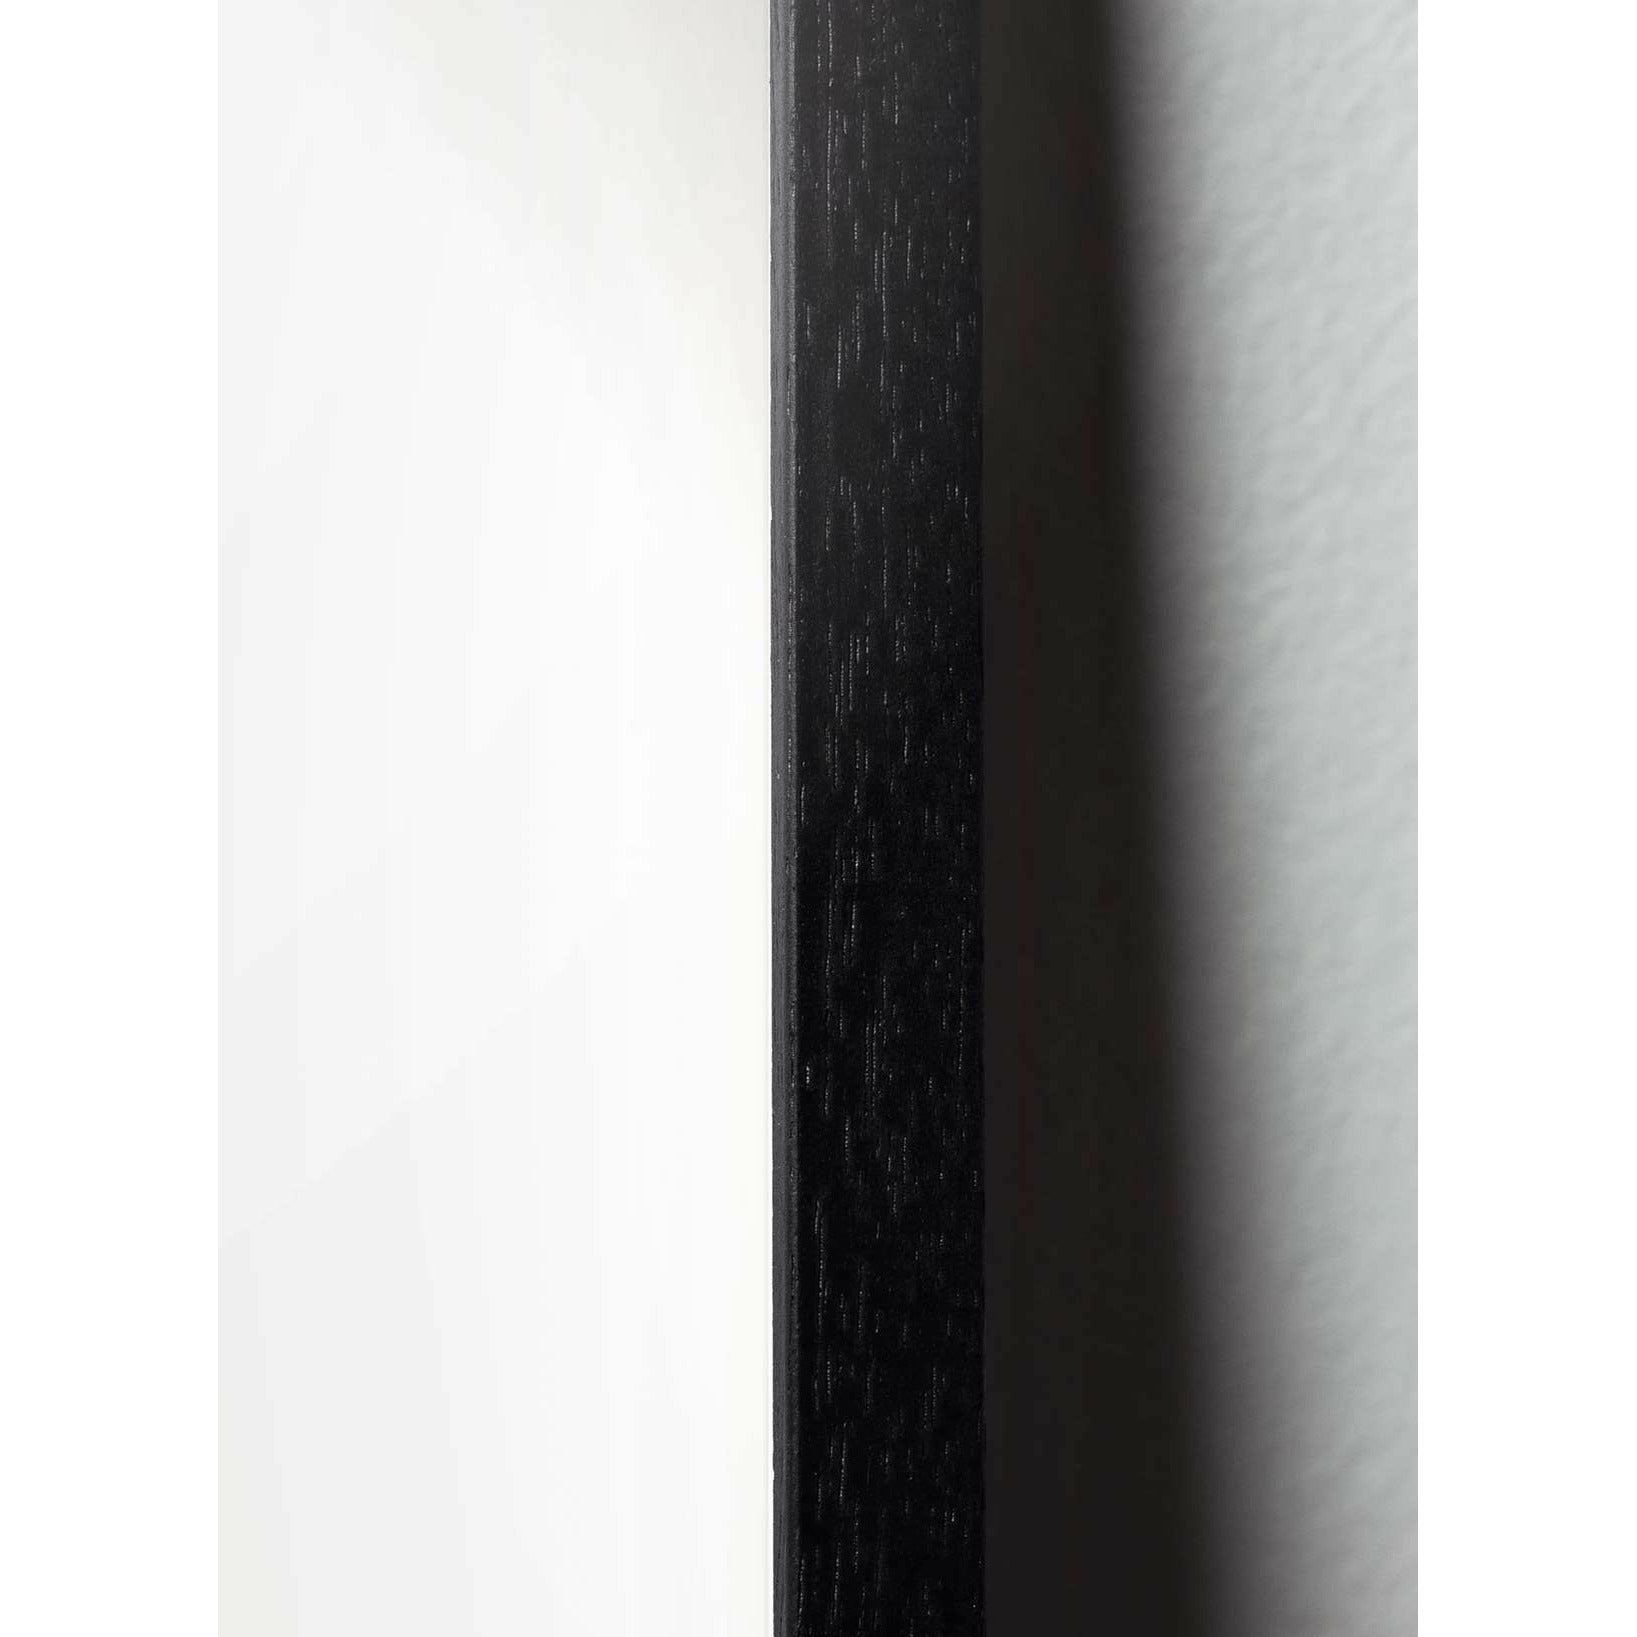 brainchild Klassisches Poster von Kiefernkegel, Rahmen aus schwarz lackiertem Holz 30x40 cm, sandfarbener Hintergrund